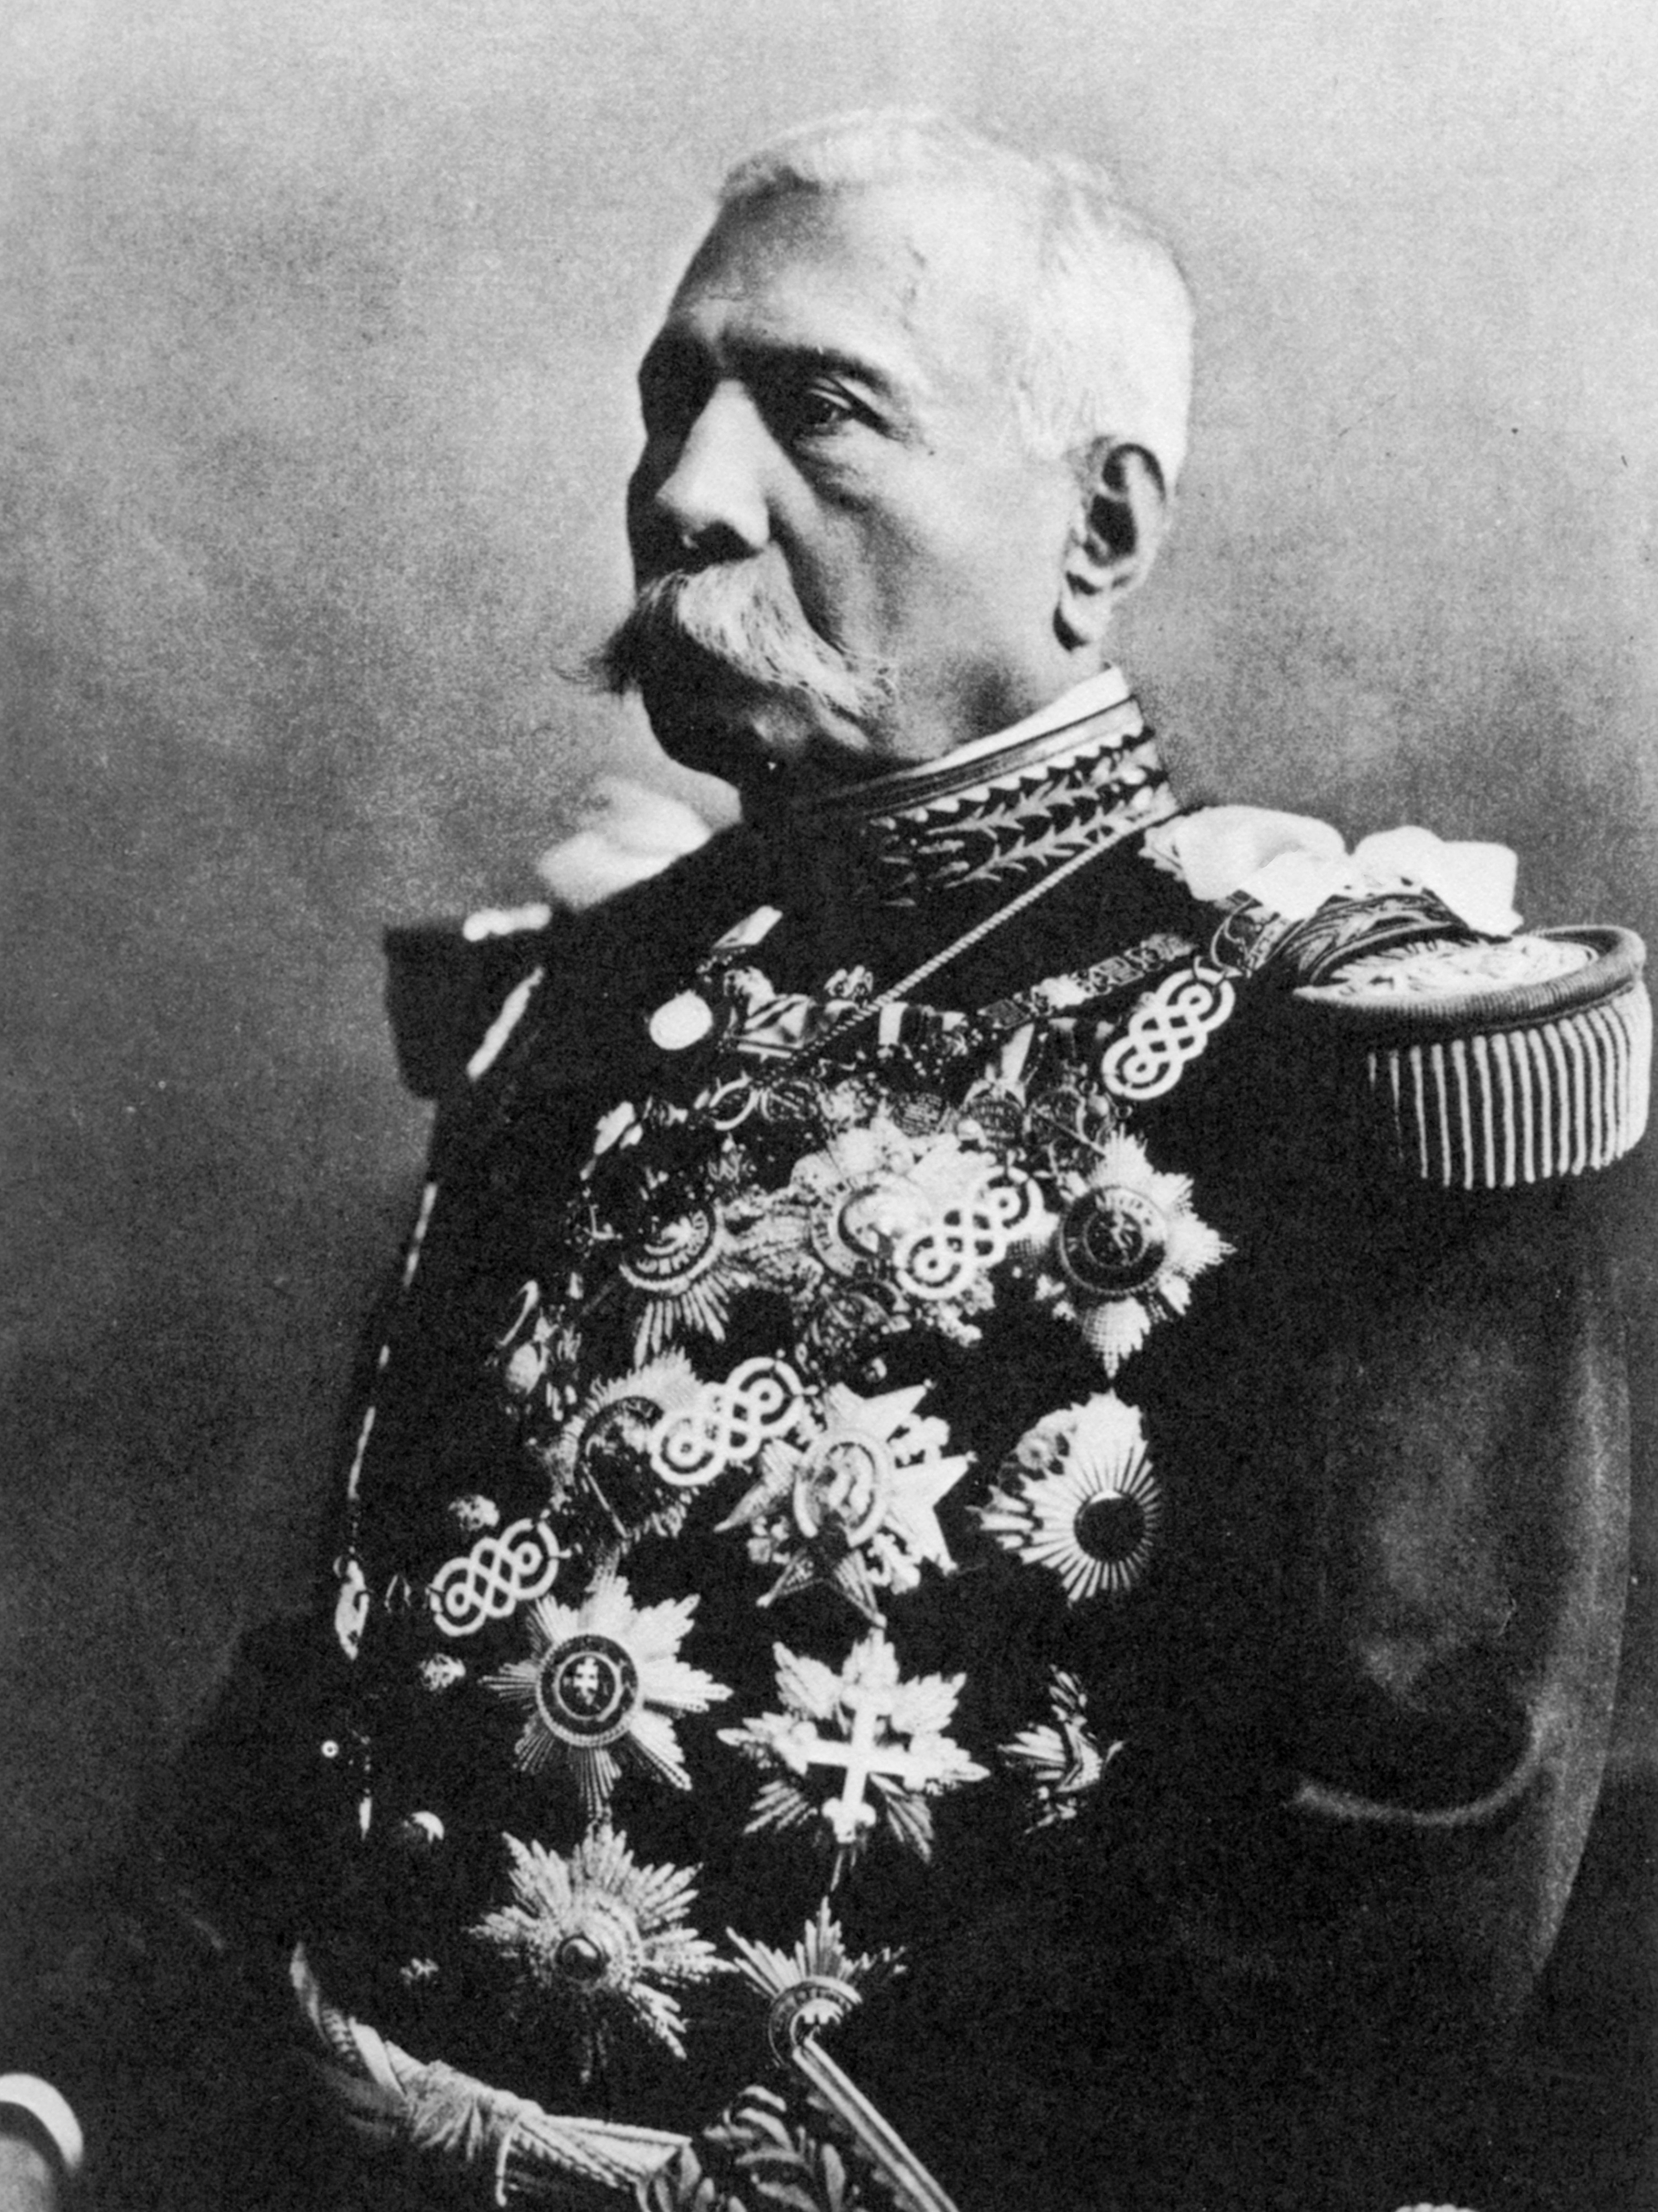 El expresidente renunció a su cargo en mayo de 1911. (Foto: Gettyimages)